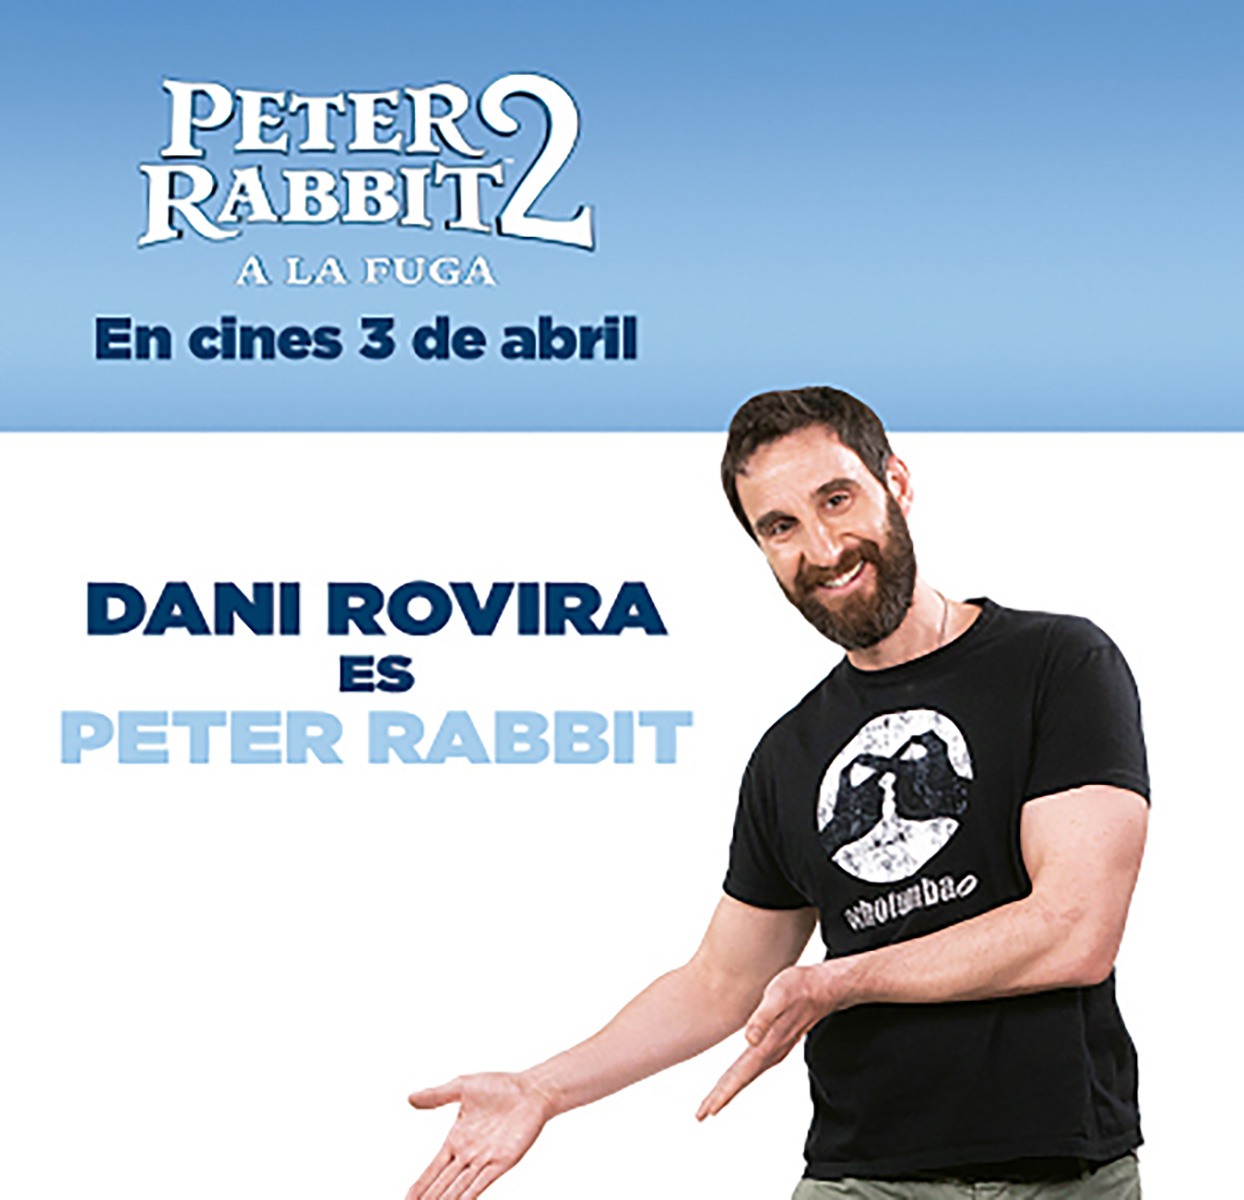 Dani Rovira vuelve a poner voz al protagonista de ‘Peter Rabbit’